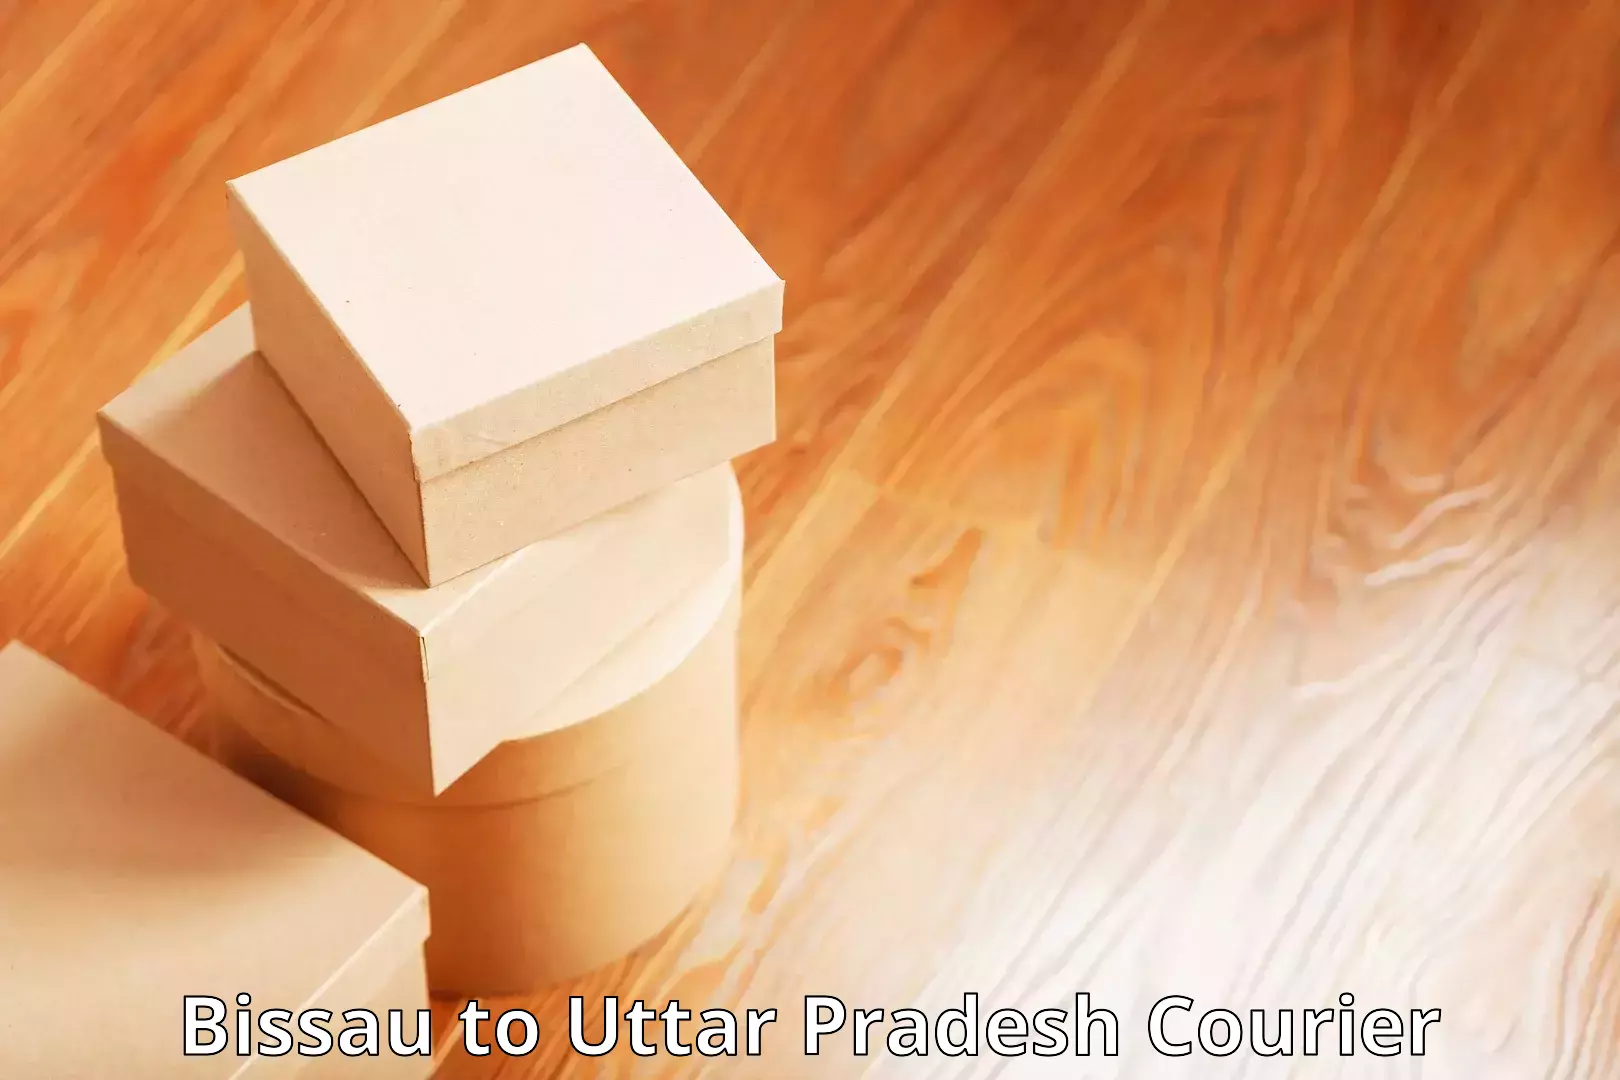 User-friendly courier app Bissau to Uttar Pradesh